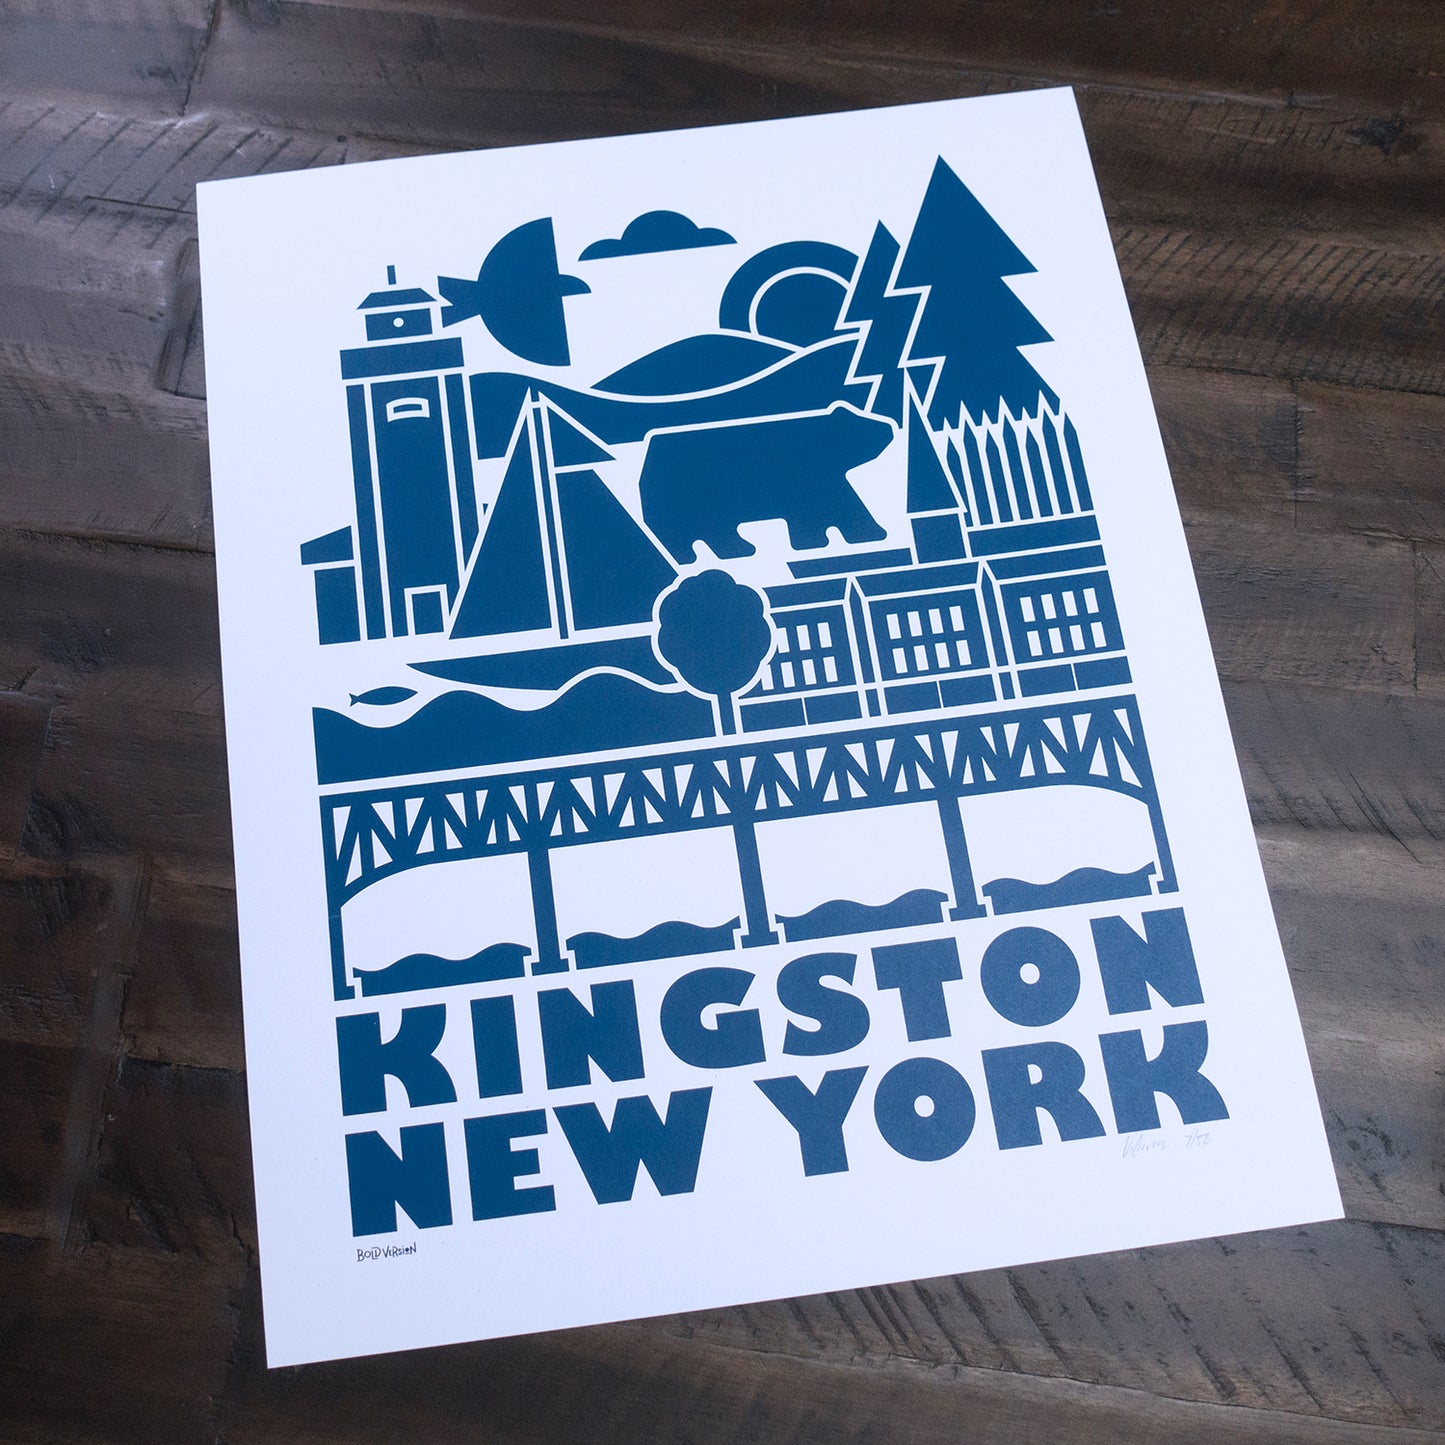 Kingston New York